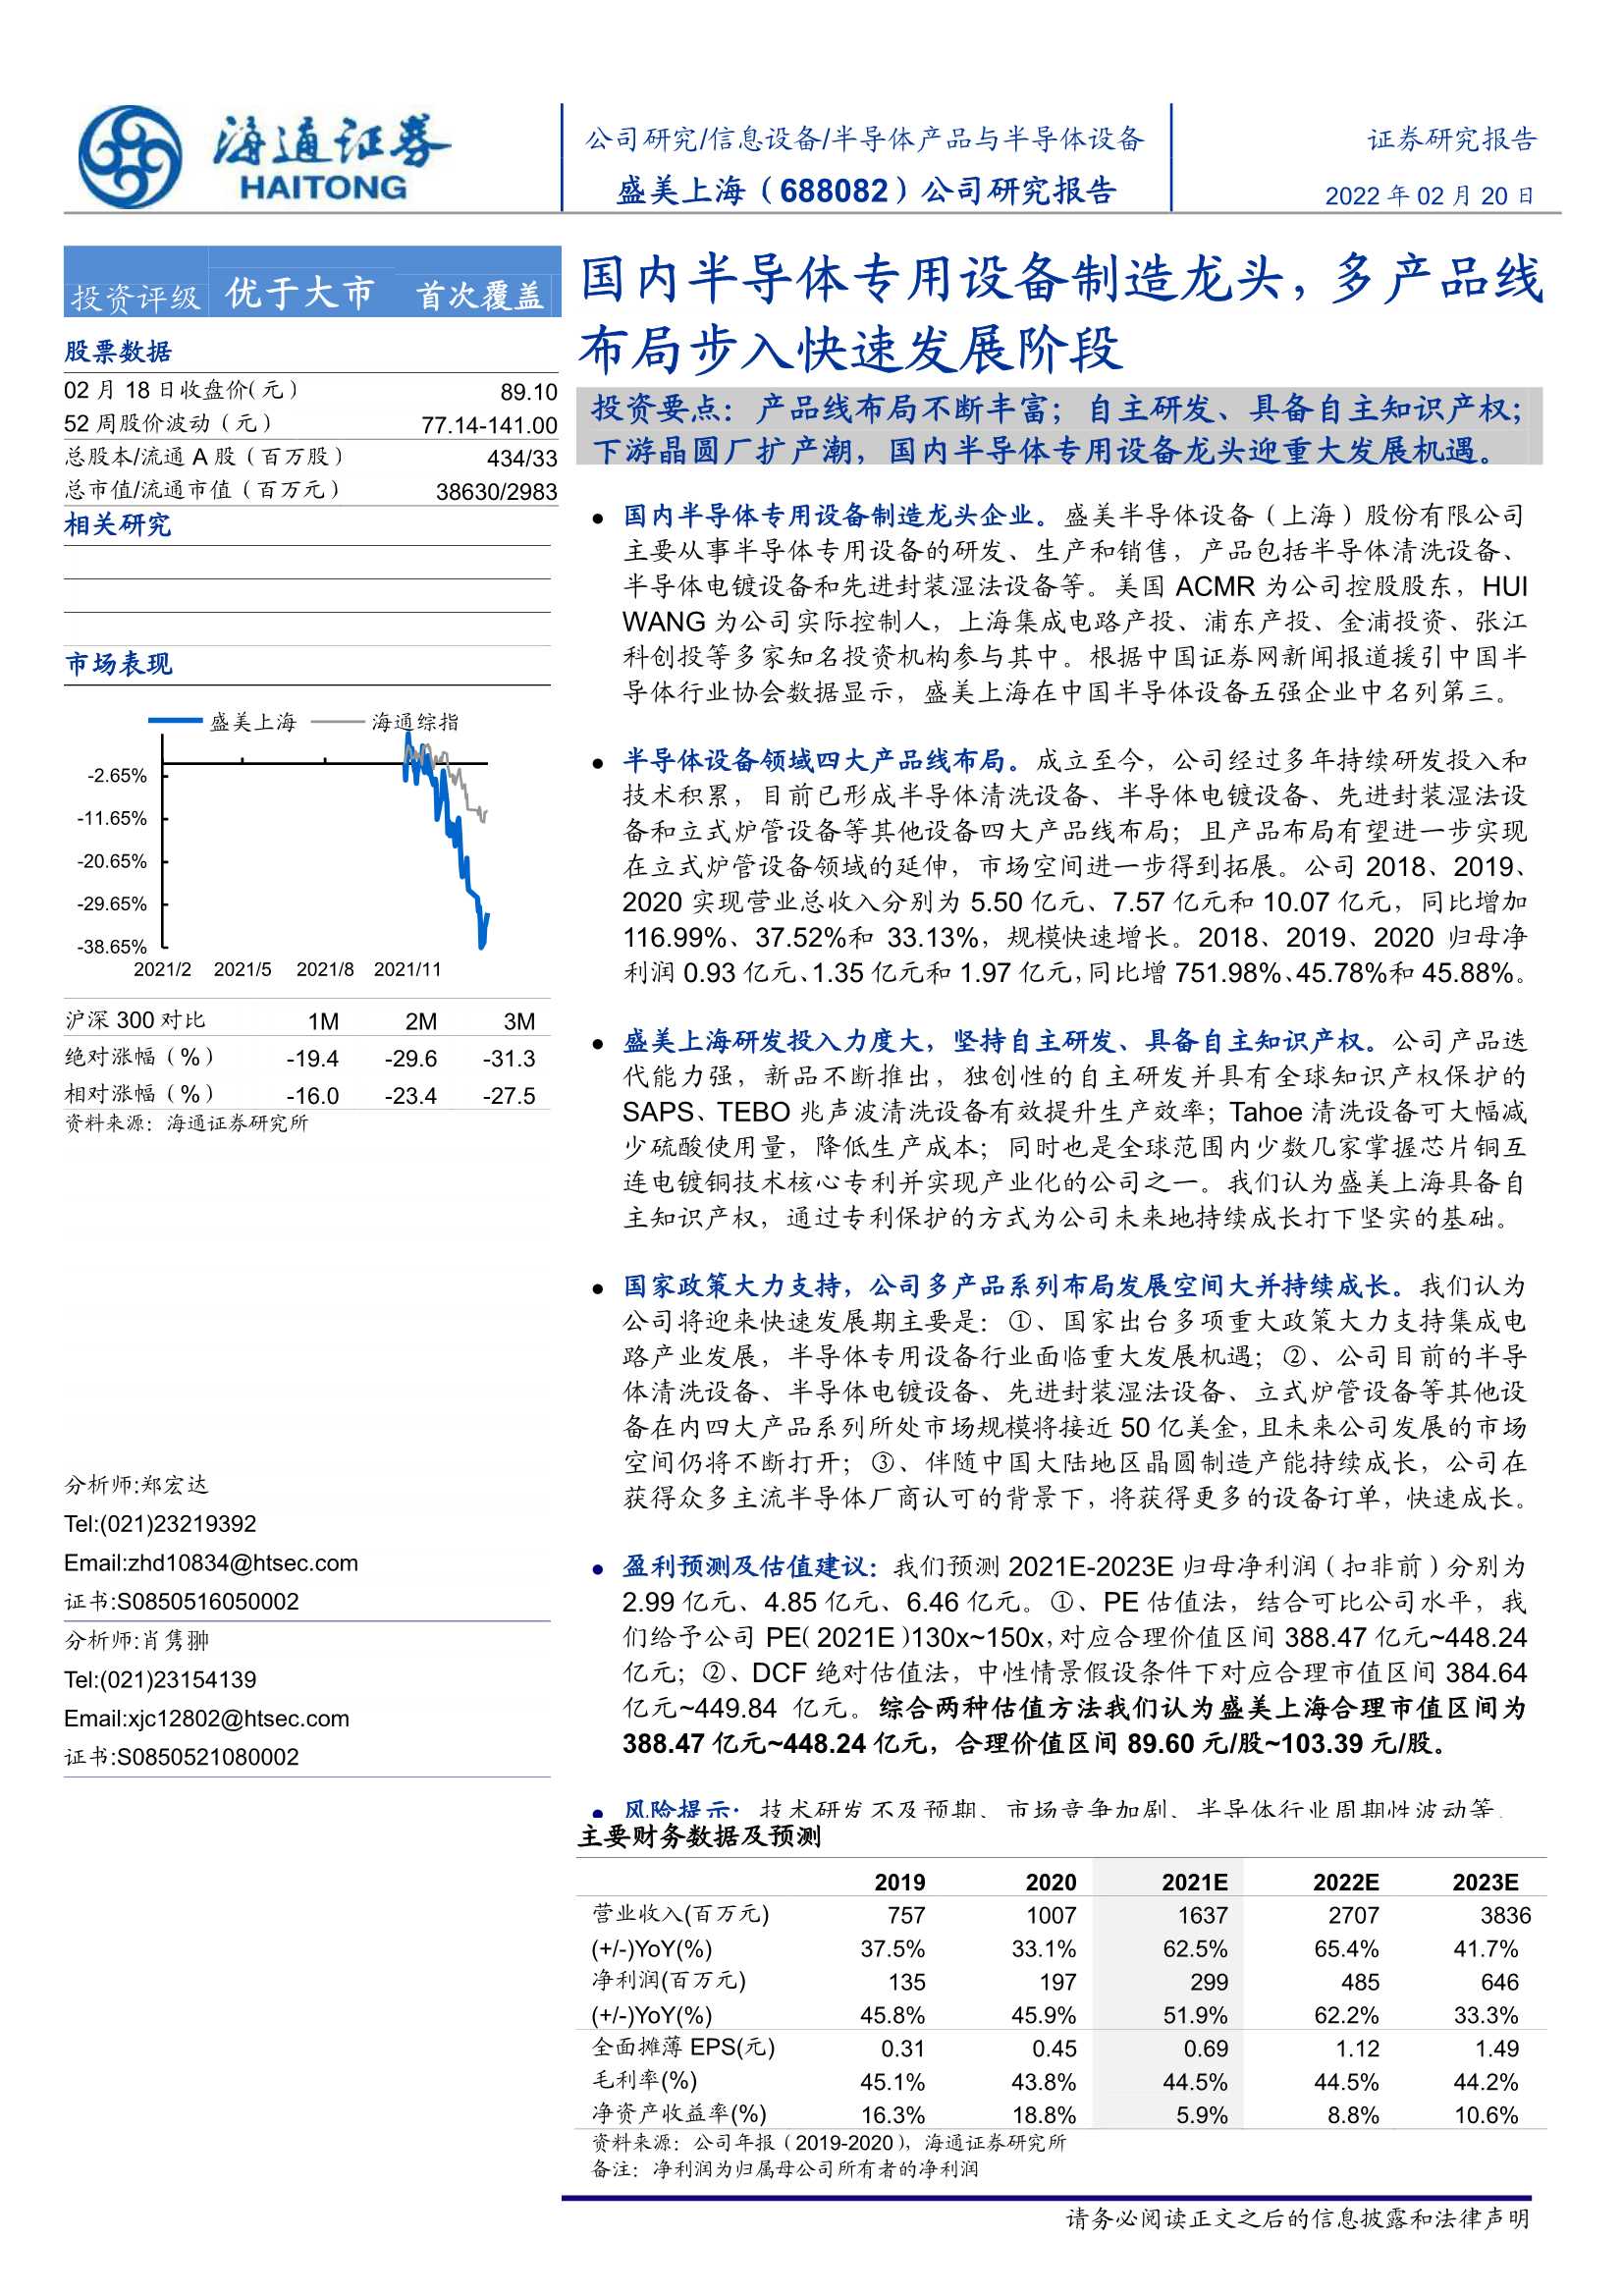 海通证券-盛美上海-688082-国内半导体专用设备制造龙头，多产品线布局步入快速发展阶段-20220220-39页